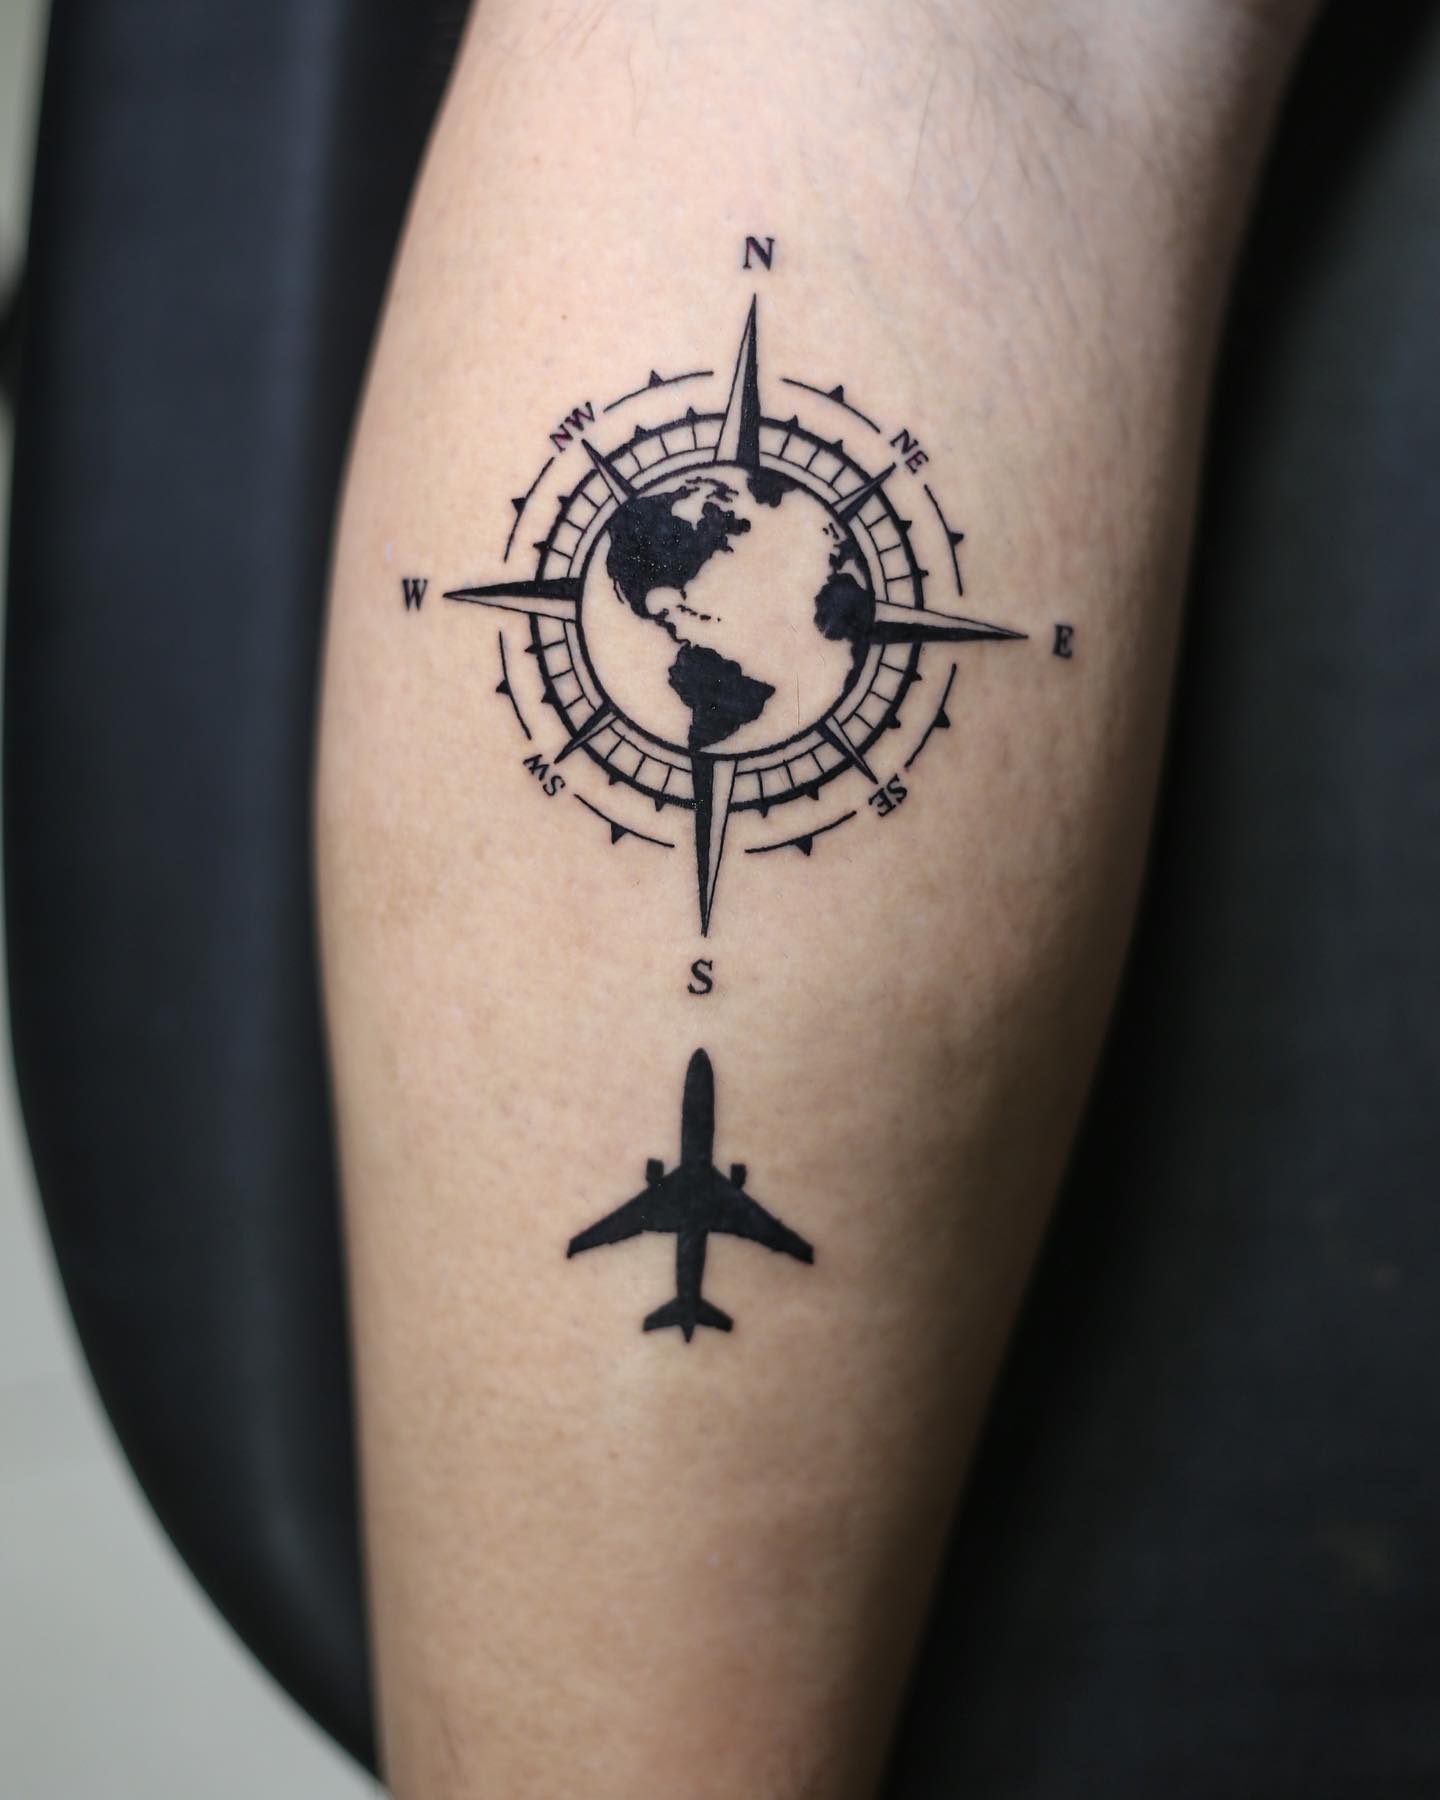 Helles Flugzeug Tattoo mit Kompass Idee 1